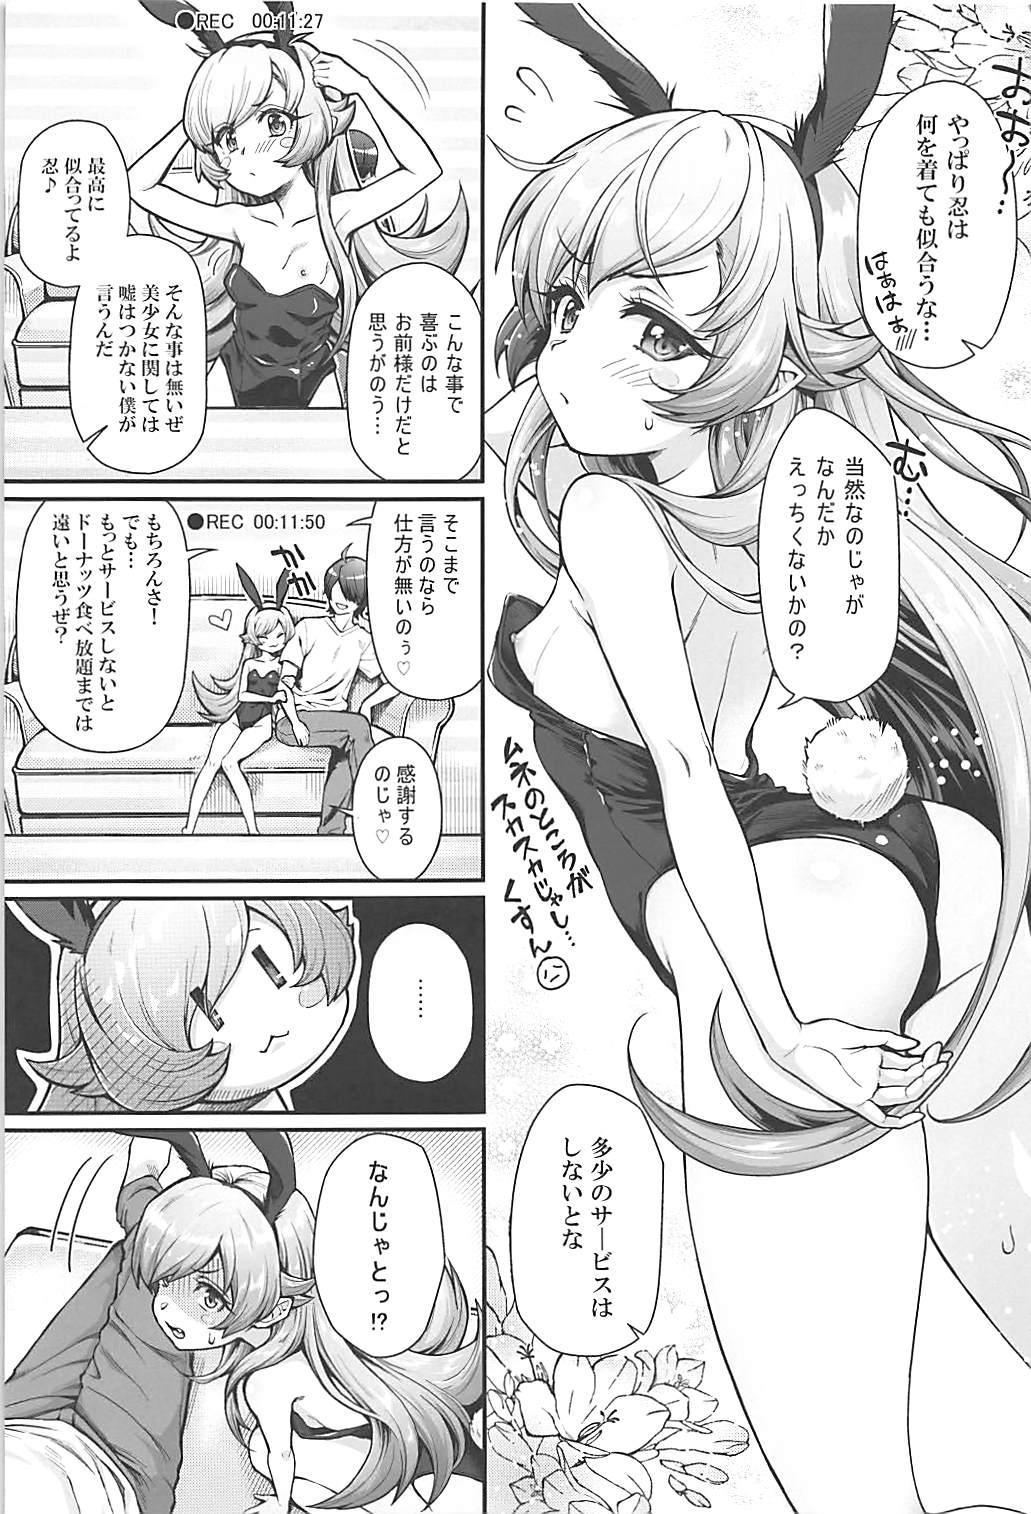 Relax Pachimonogatari Part 16: Shinobu Debut - Bakemonogatari Eating - Page 4